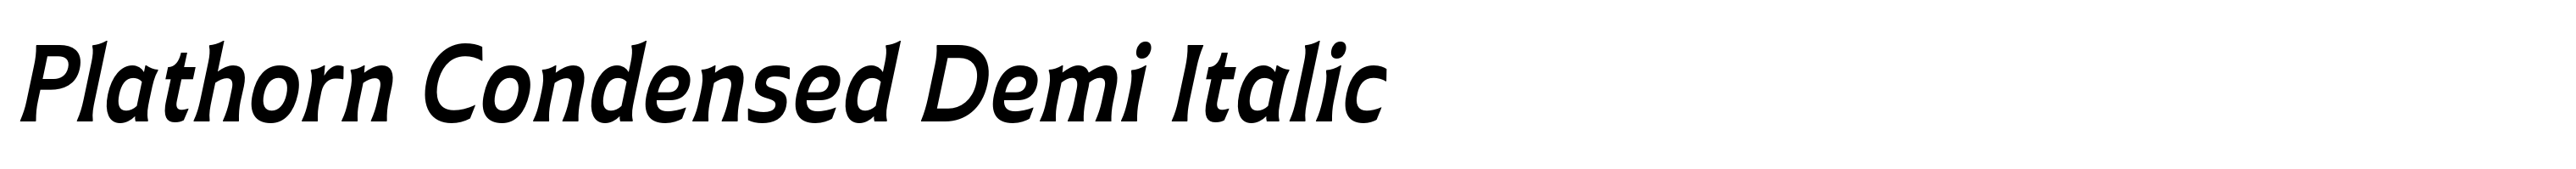 Plathorn Condensed Demi Italic